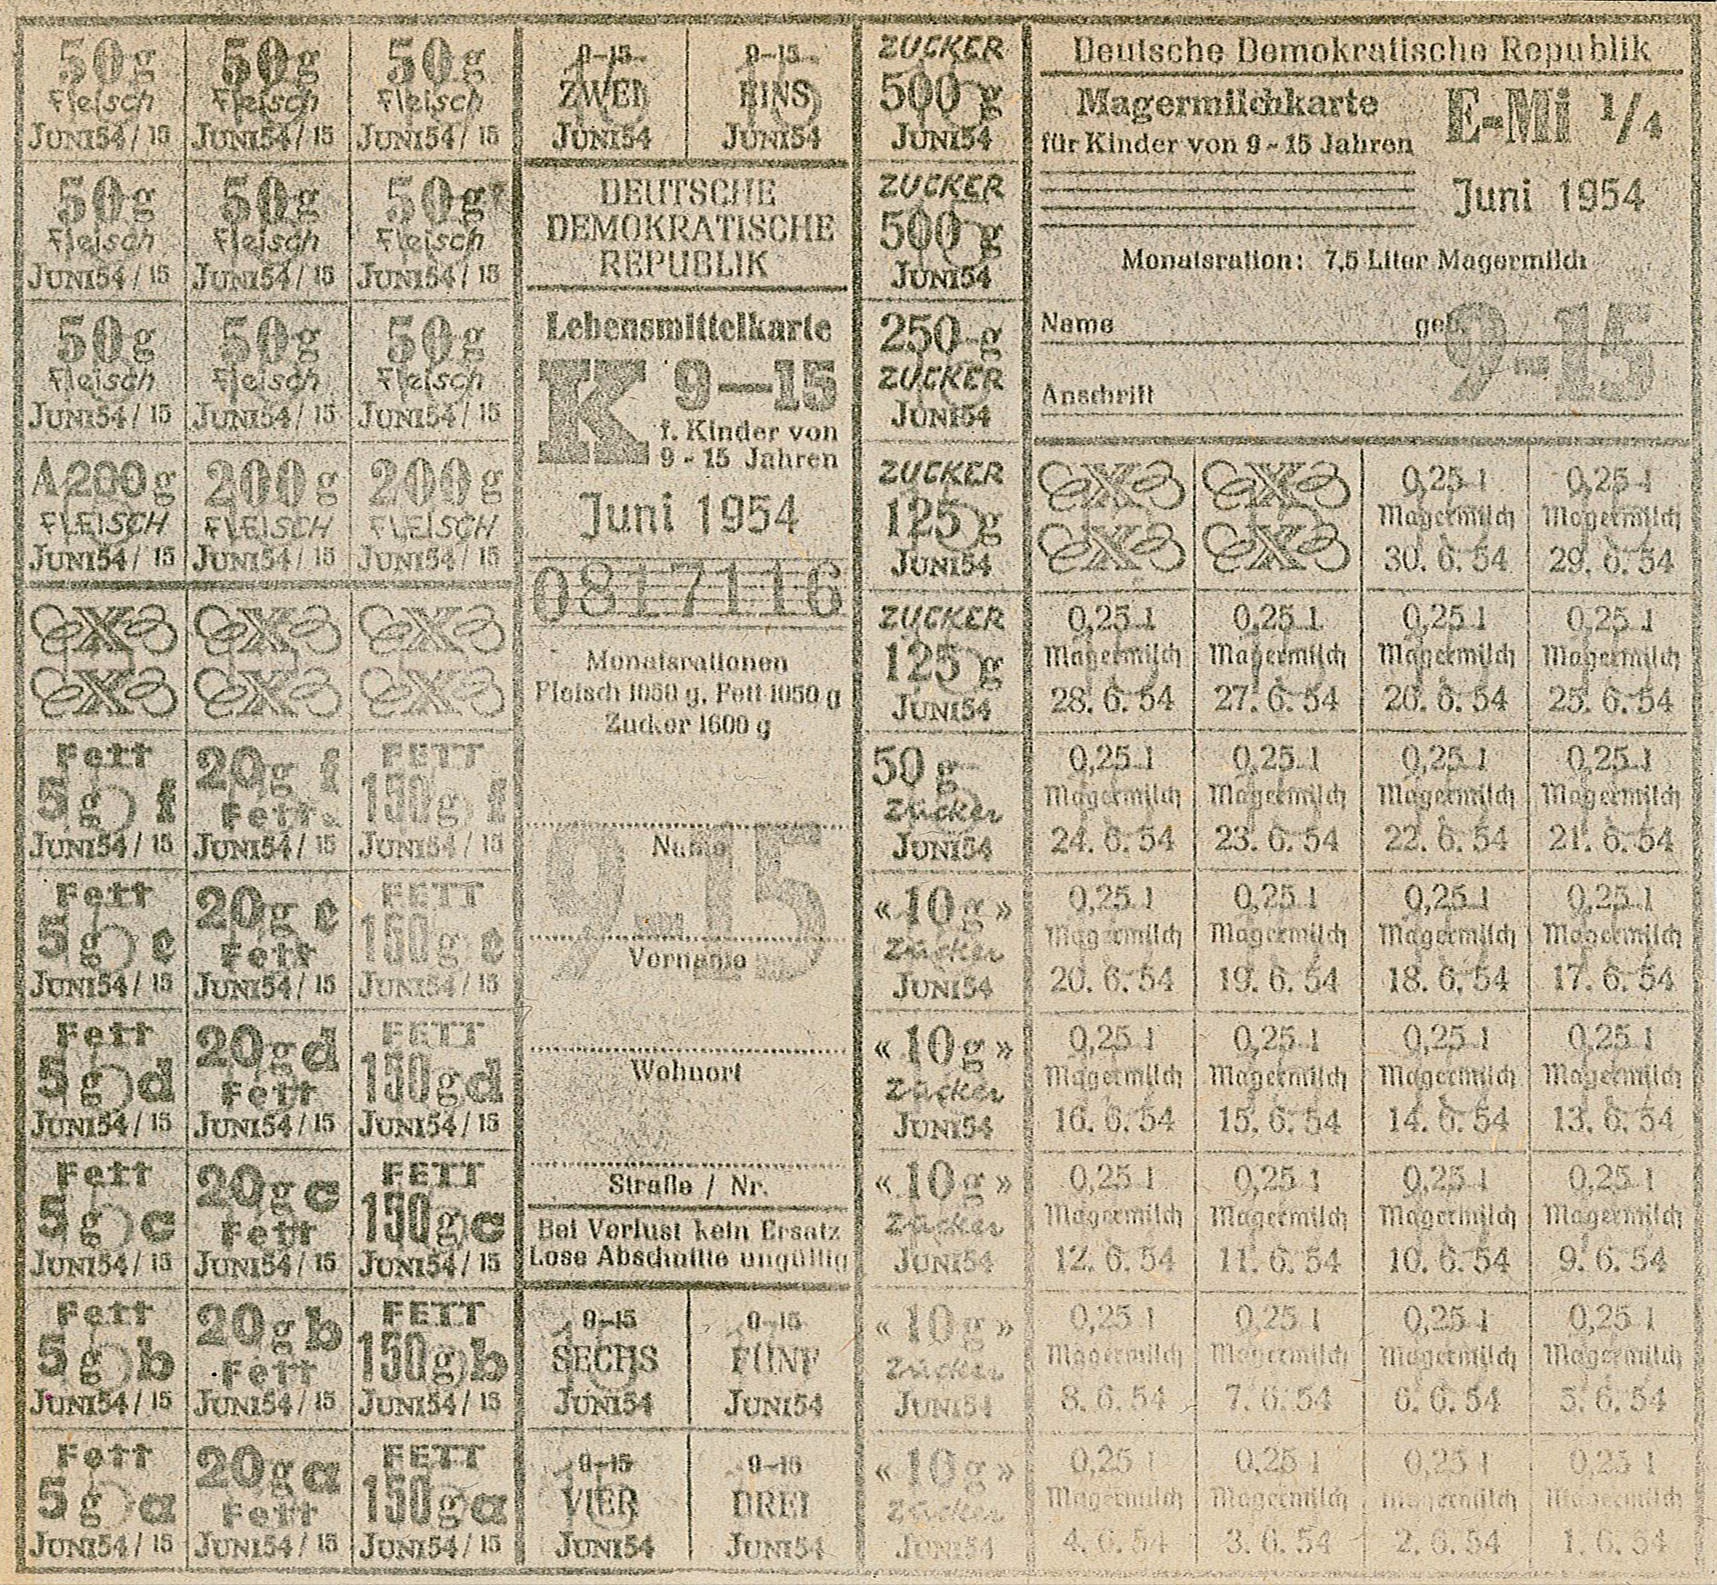 Lebensmittelkarte für Kinder von 9 bis 15 Jahren: Monatsrationen Fleisch, Fett, Magermilch und Zucker (1954) (Museum Wolmirstedt RR-F)